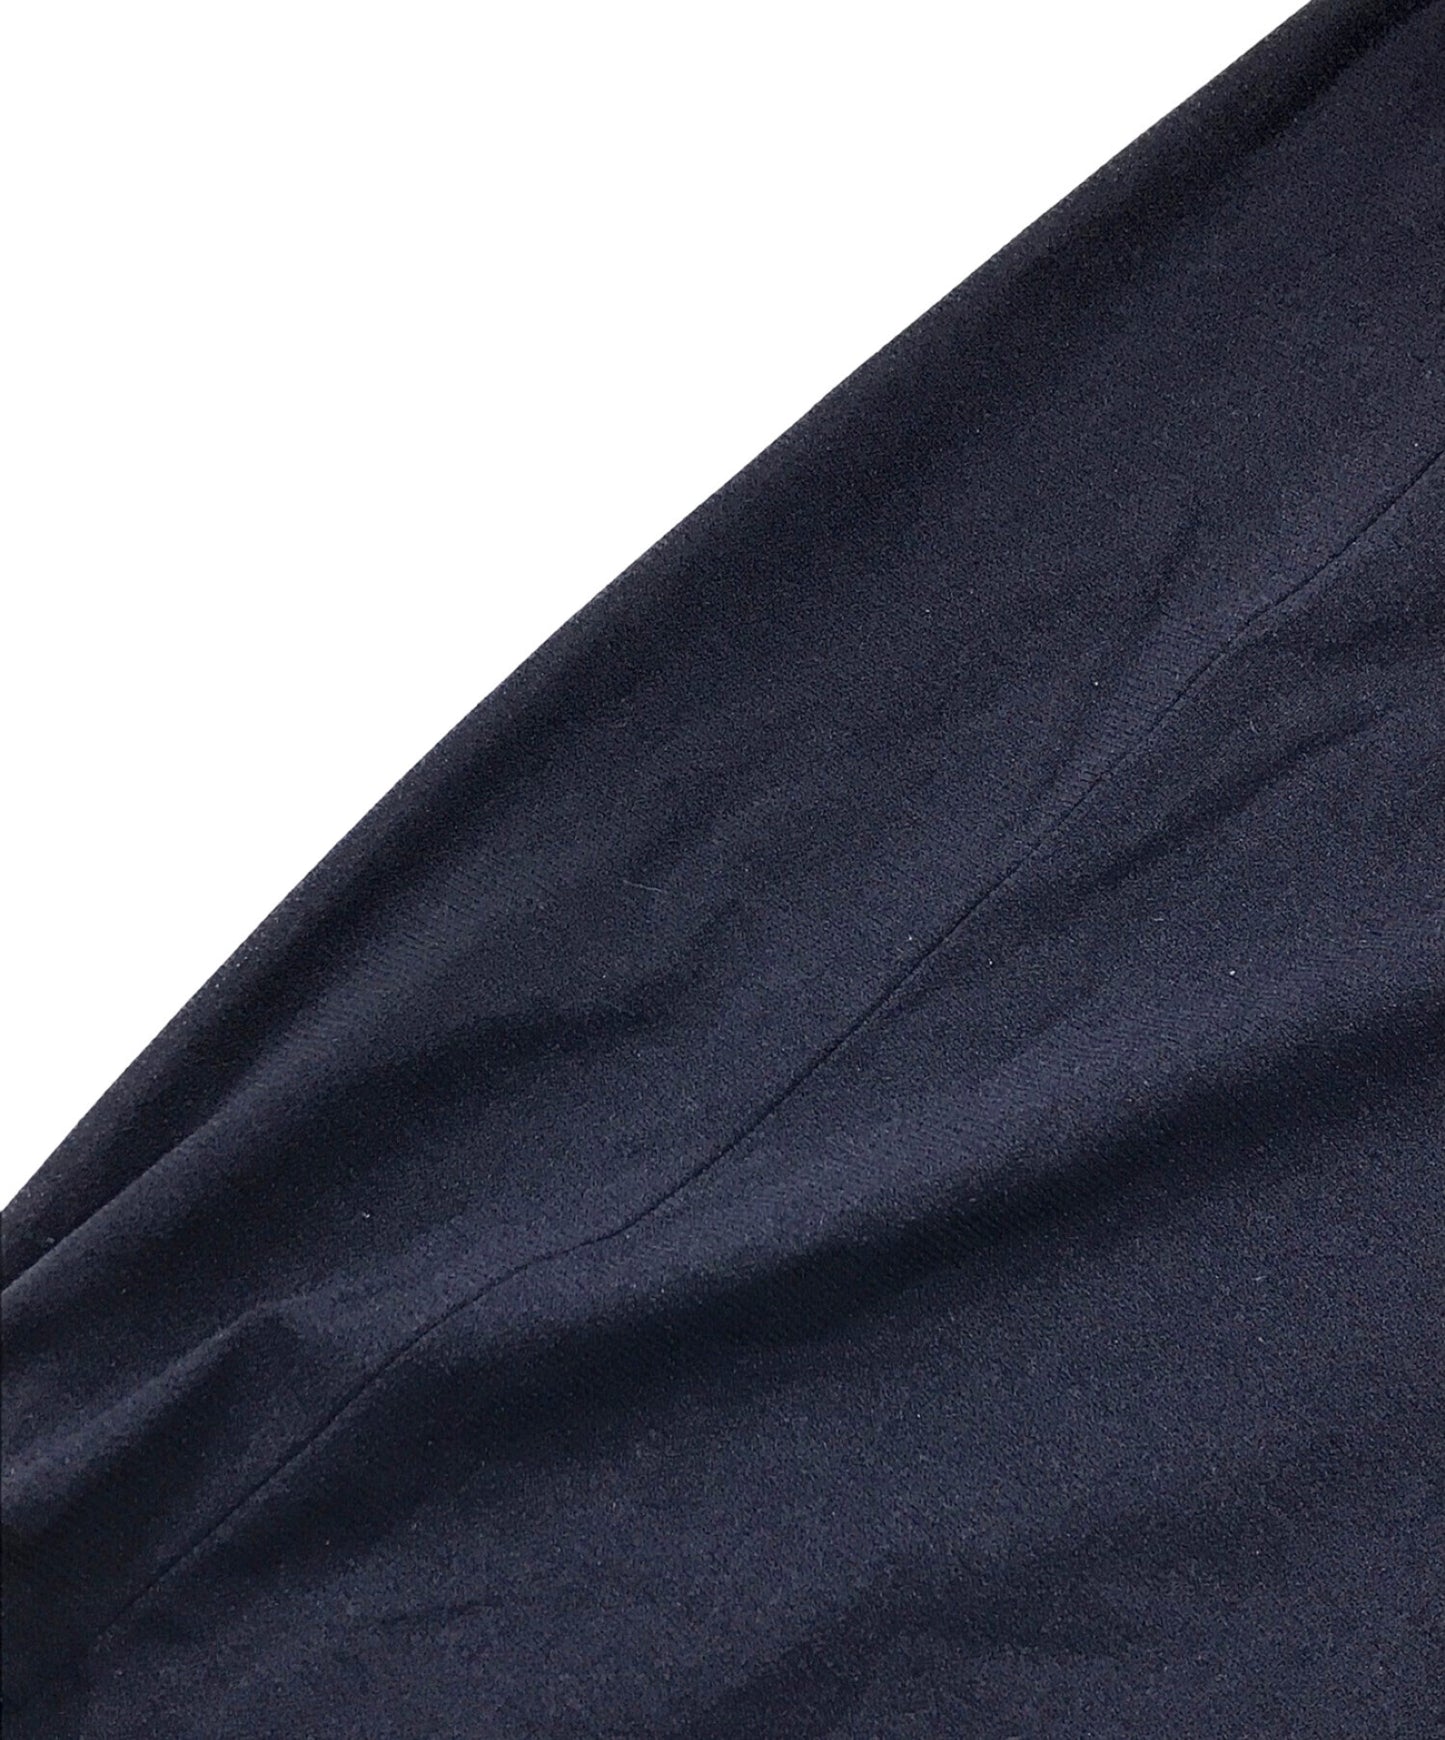 Yohji Yamamoto 90的尼龍無袖連衣裙FT-D06-608